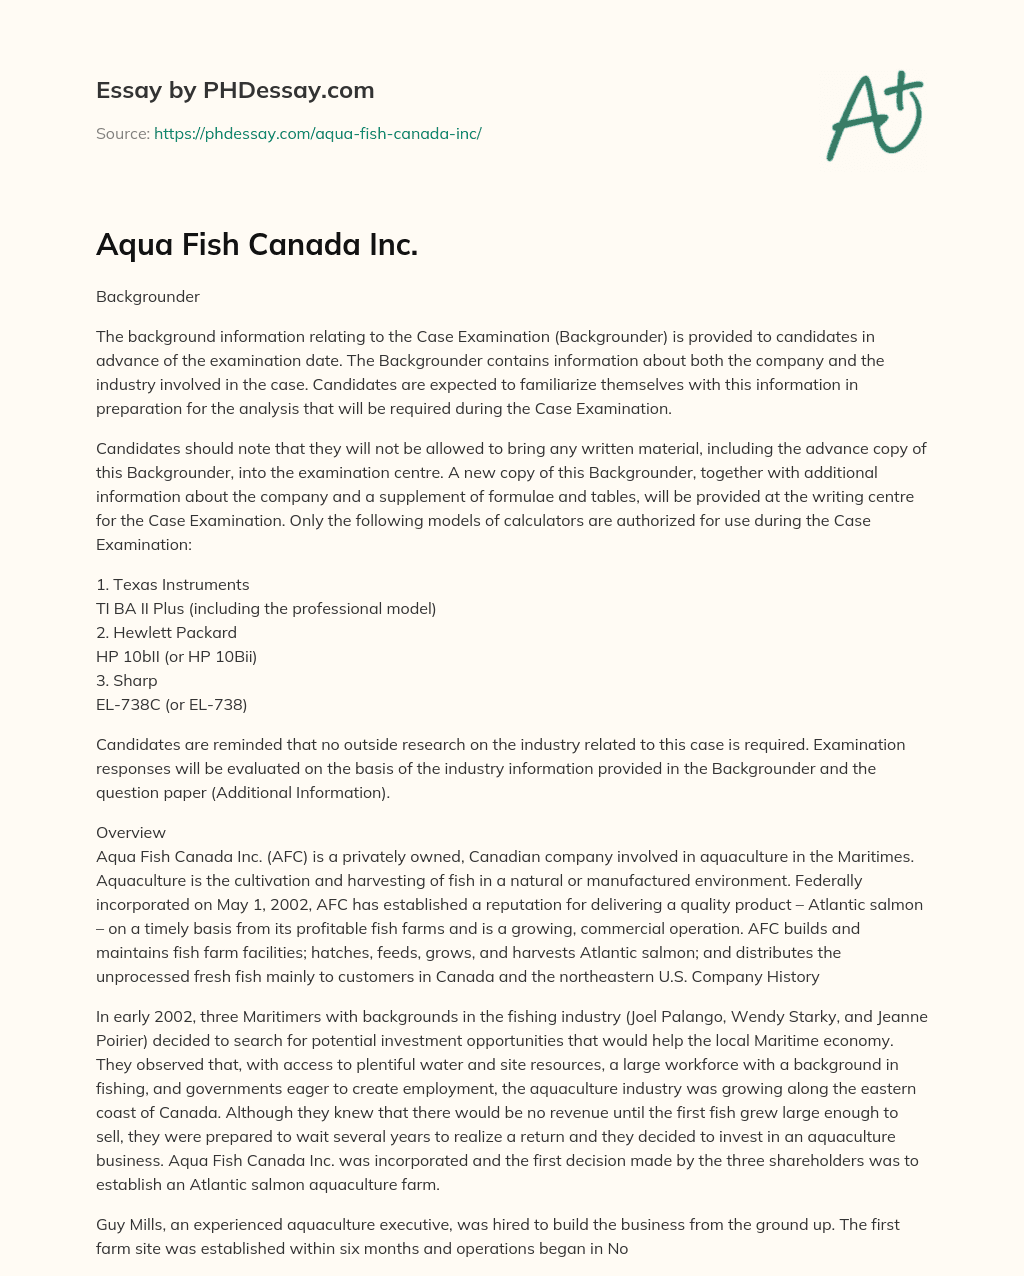 Aqua Fish Canada Inc. essay